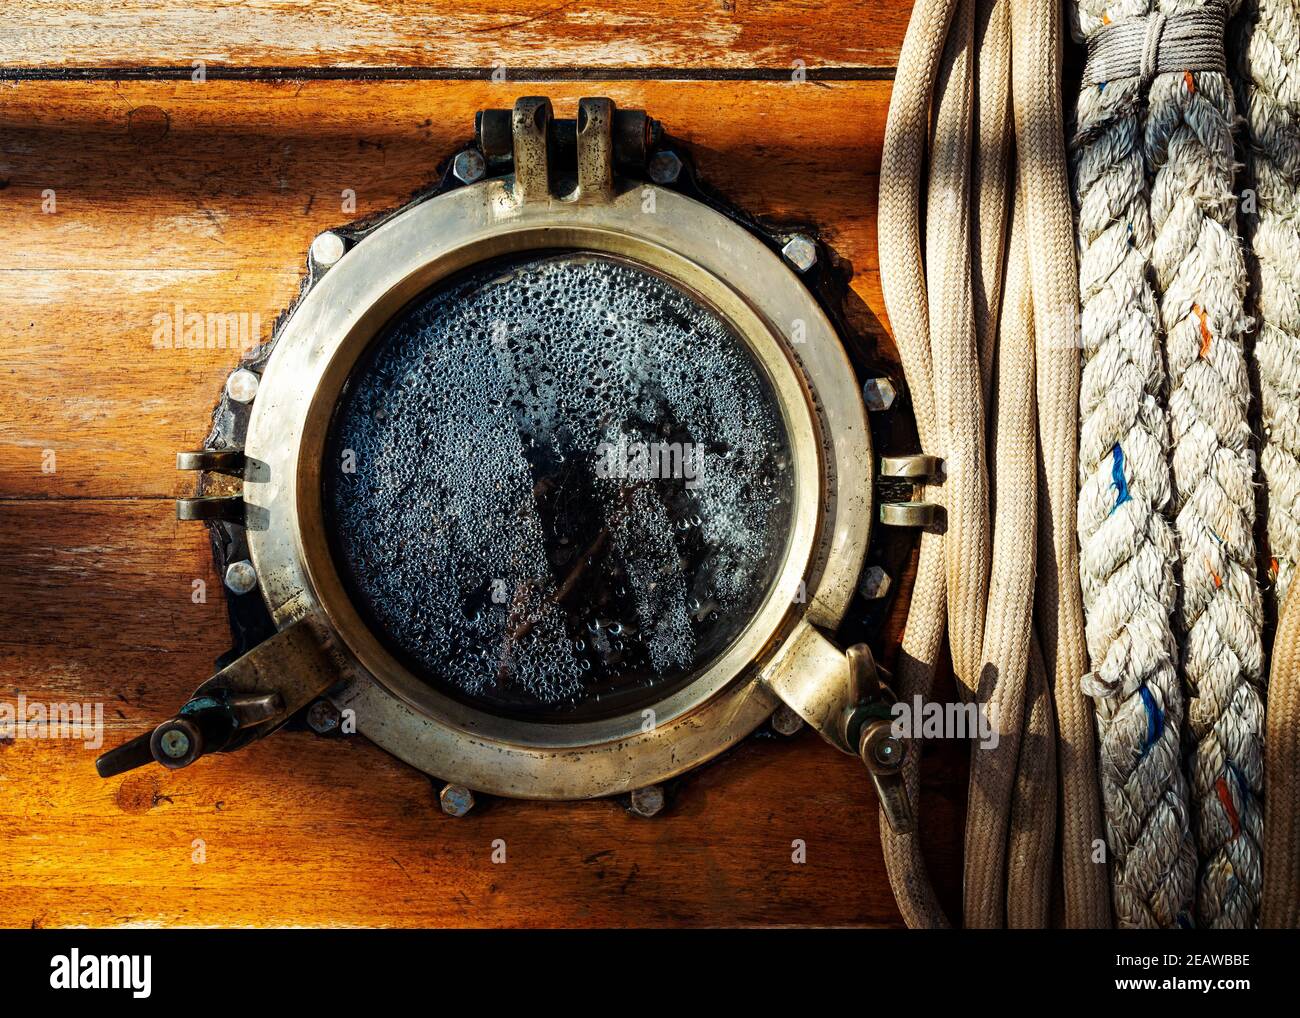 Vintage ship brass porthole and ropes Stock Photo